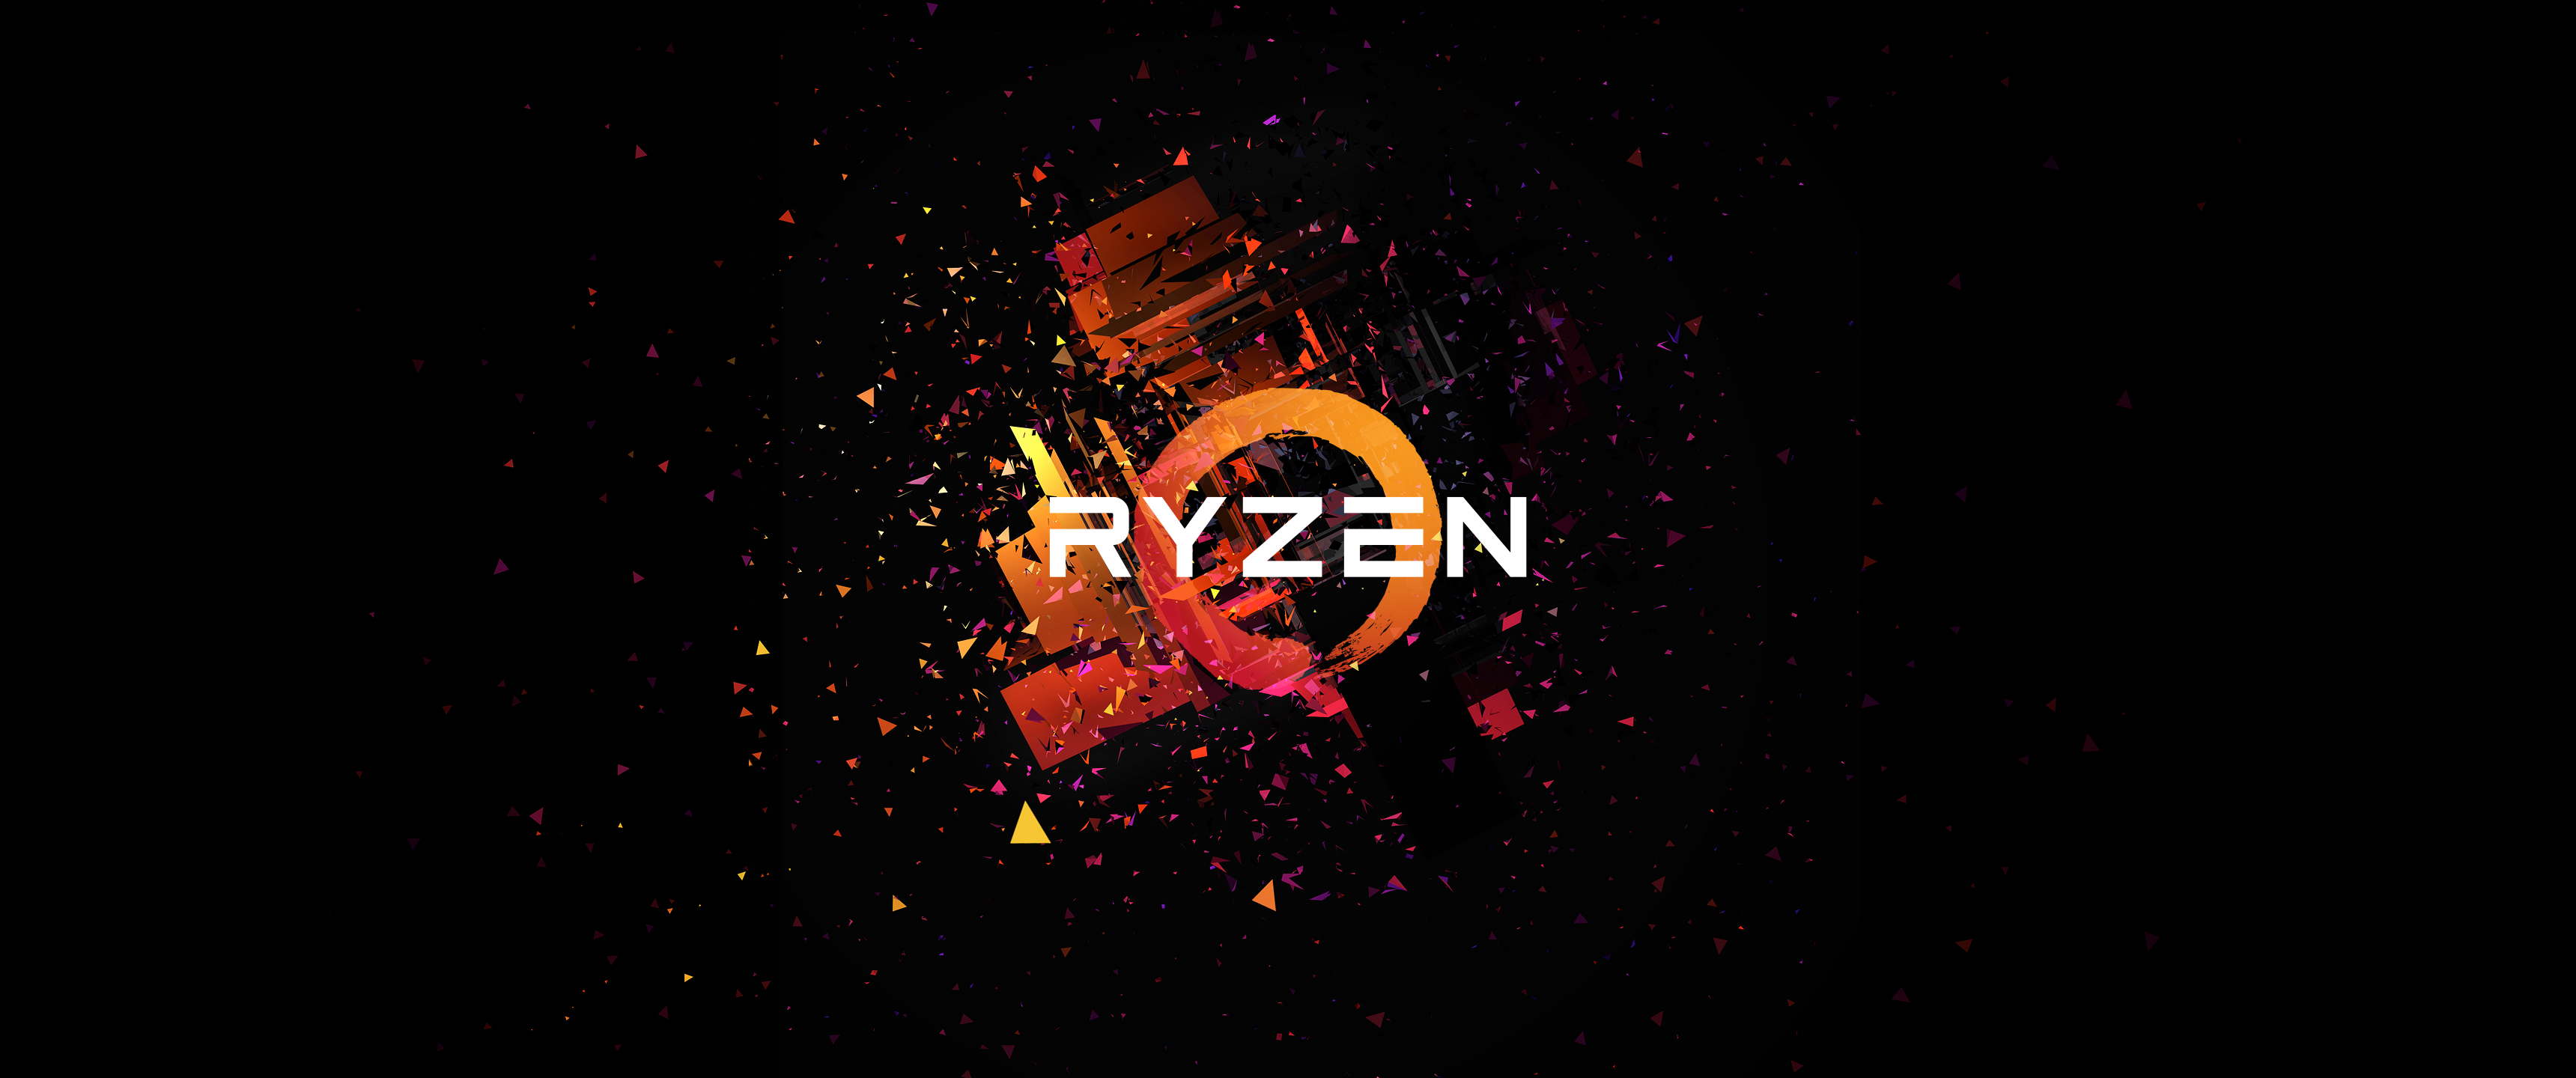 AMD Ryzen 5 Wallpaper Free AMD Ryzen 5 Background